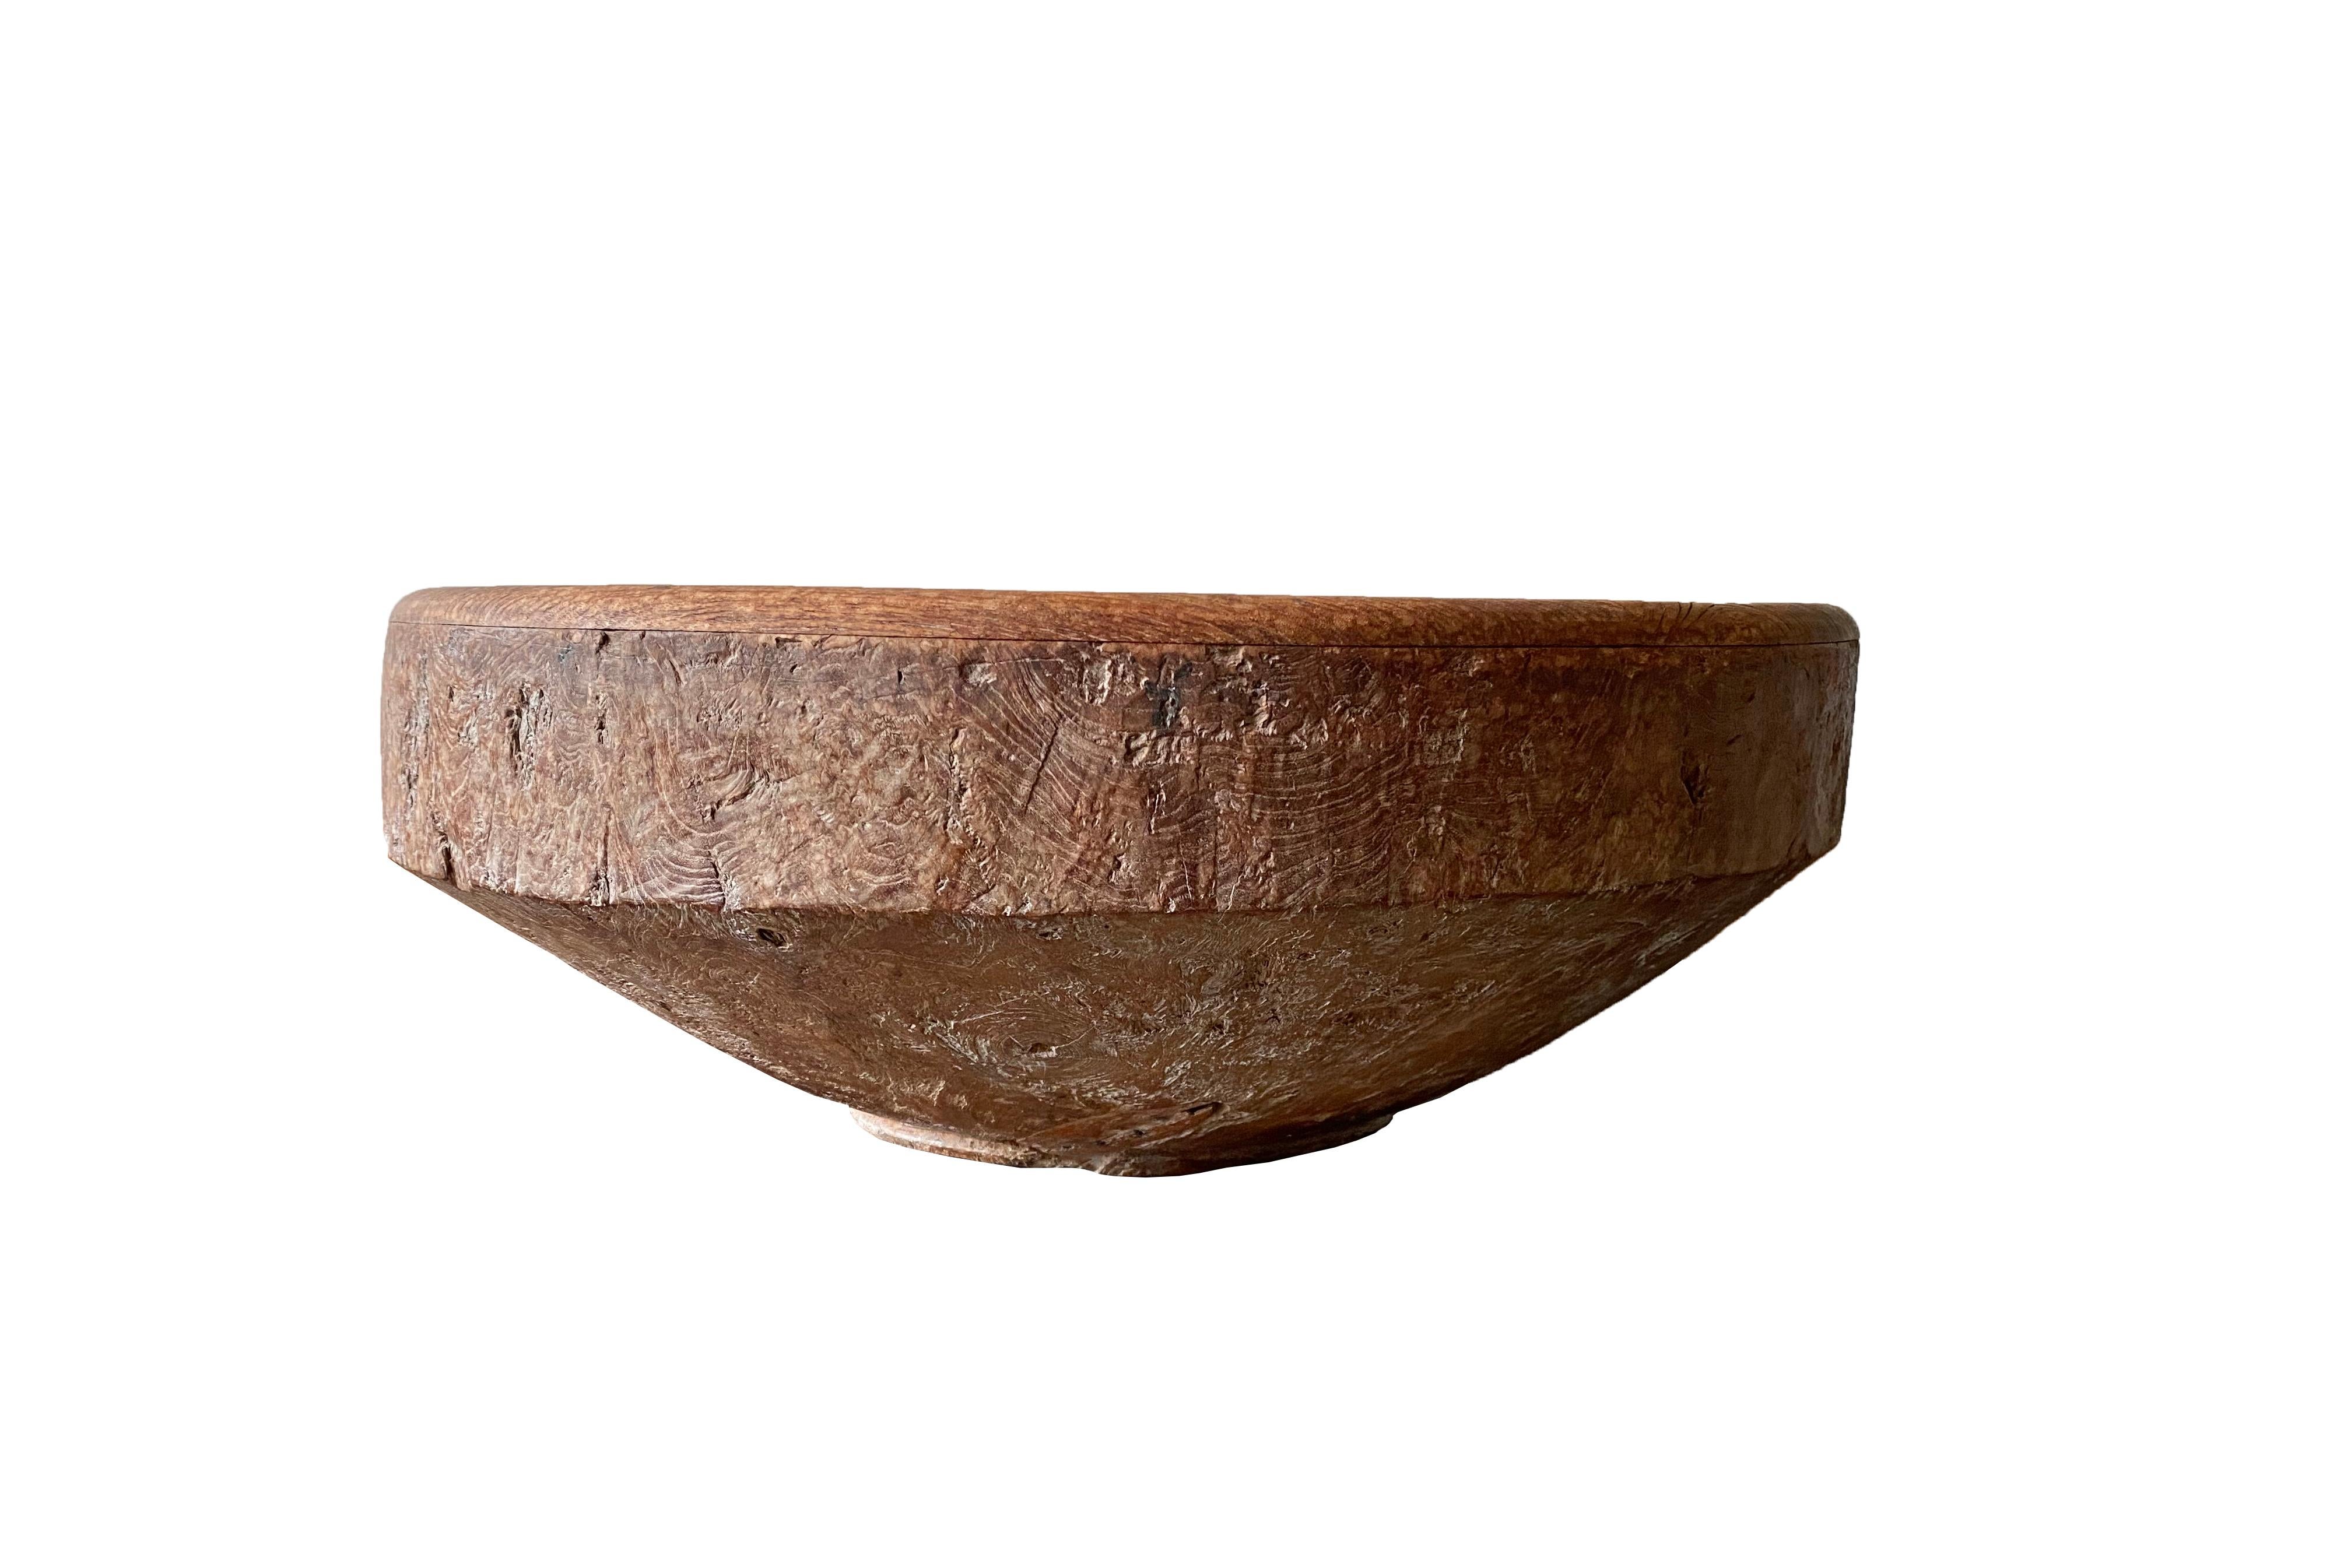 Diese Trommel aus Teakholz wurde auf der Insel Java in Indonesien hergestellt. Er ist in der Mitte hohl, weist aber eine robuste Struktur mit schönen Holzmustern auf. Perfekt als Couchtisch oder Sofatisch zu verwenden. 

Abmessungen: Höhe 28cm x